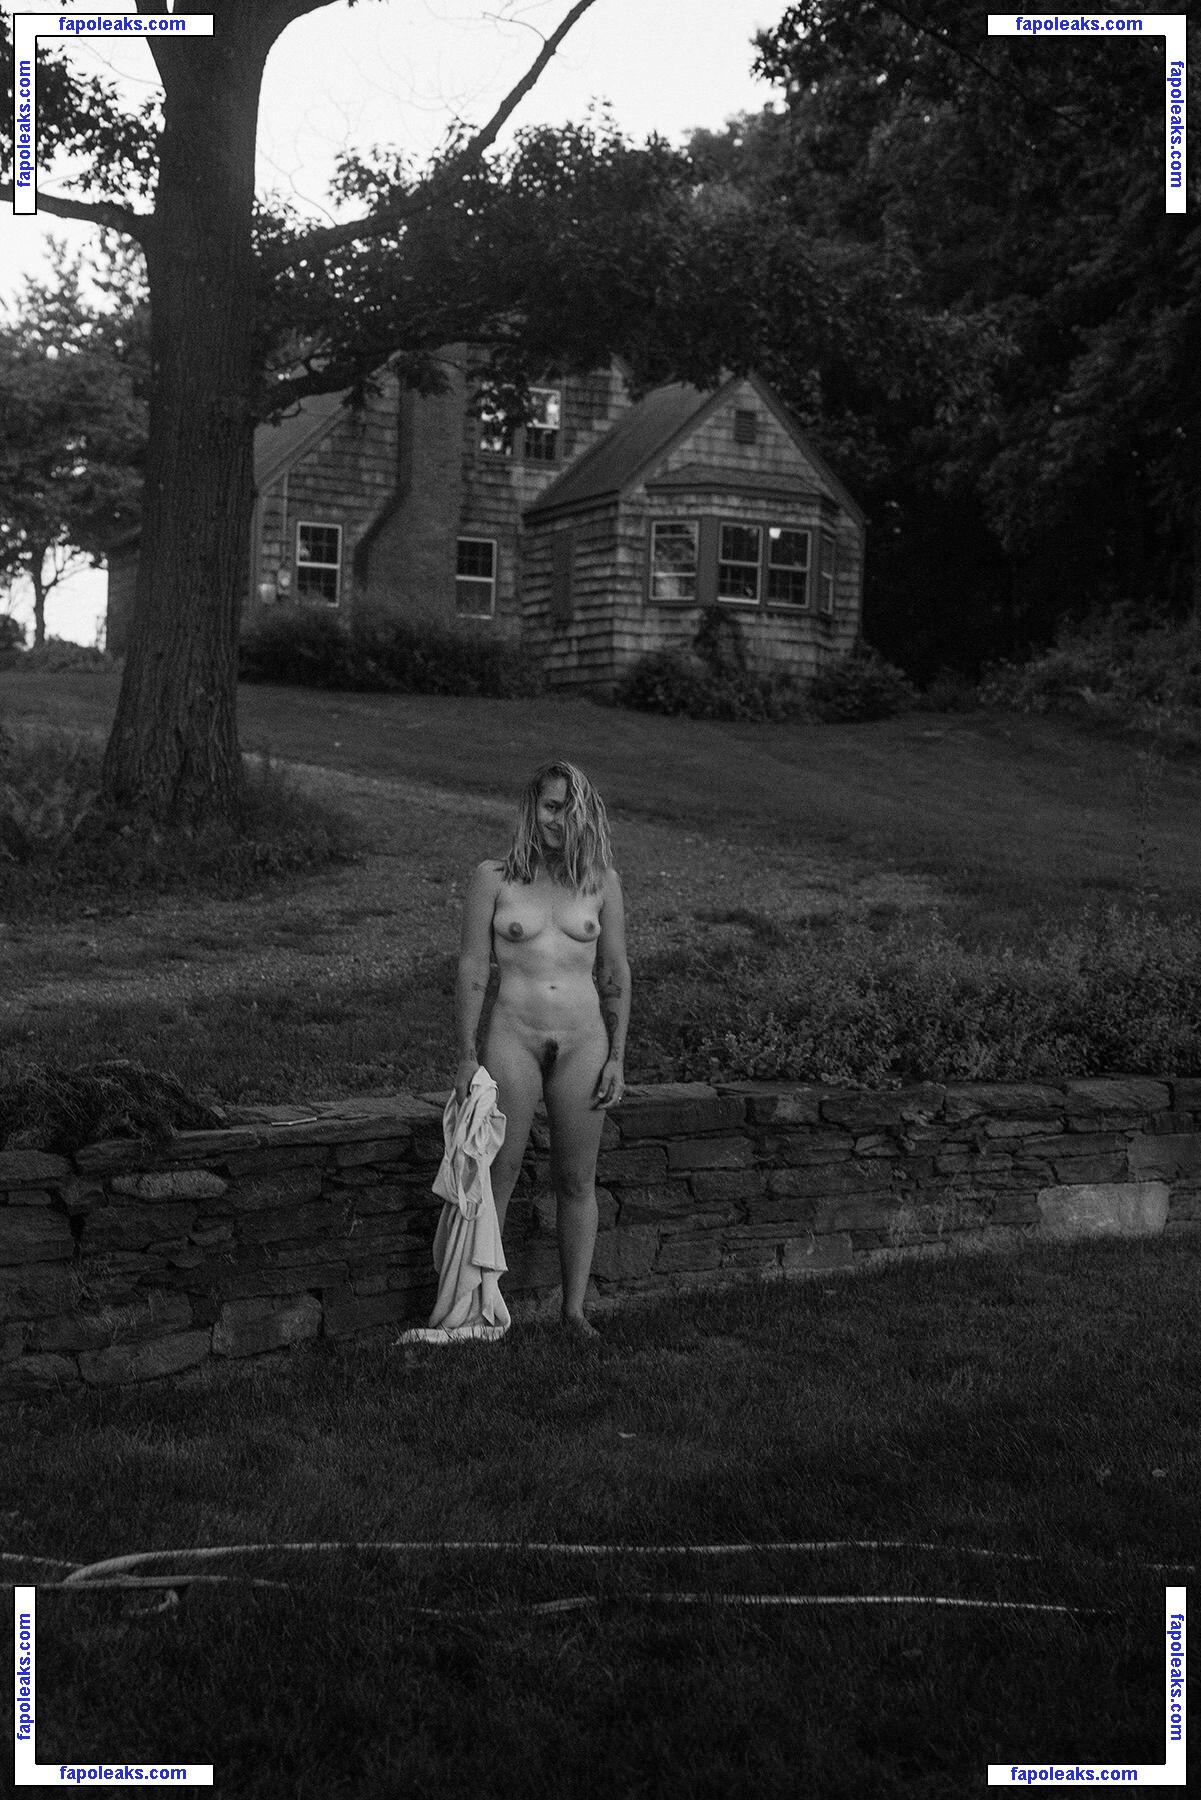 Jemima Kirke / jemima_jo_kirke / jemimakirke nude photo #0223 from OnlyFans